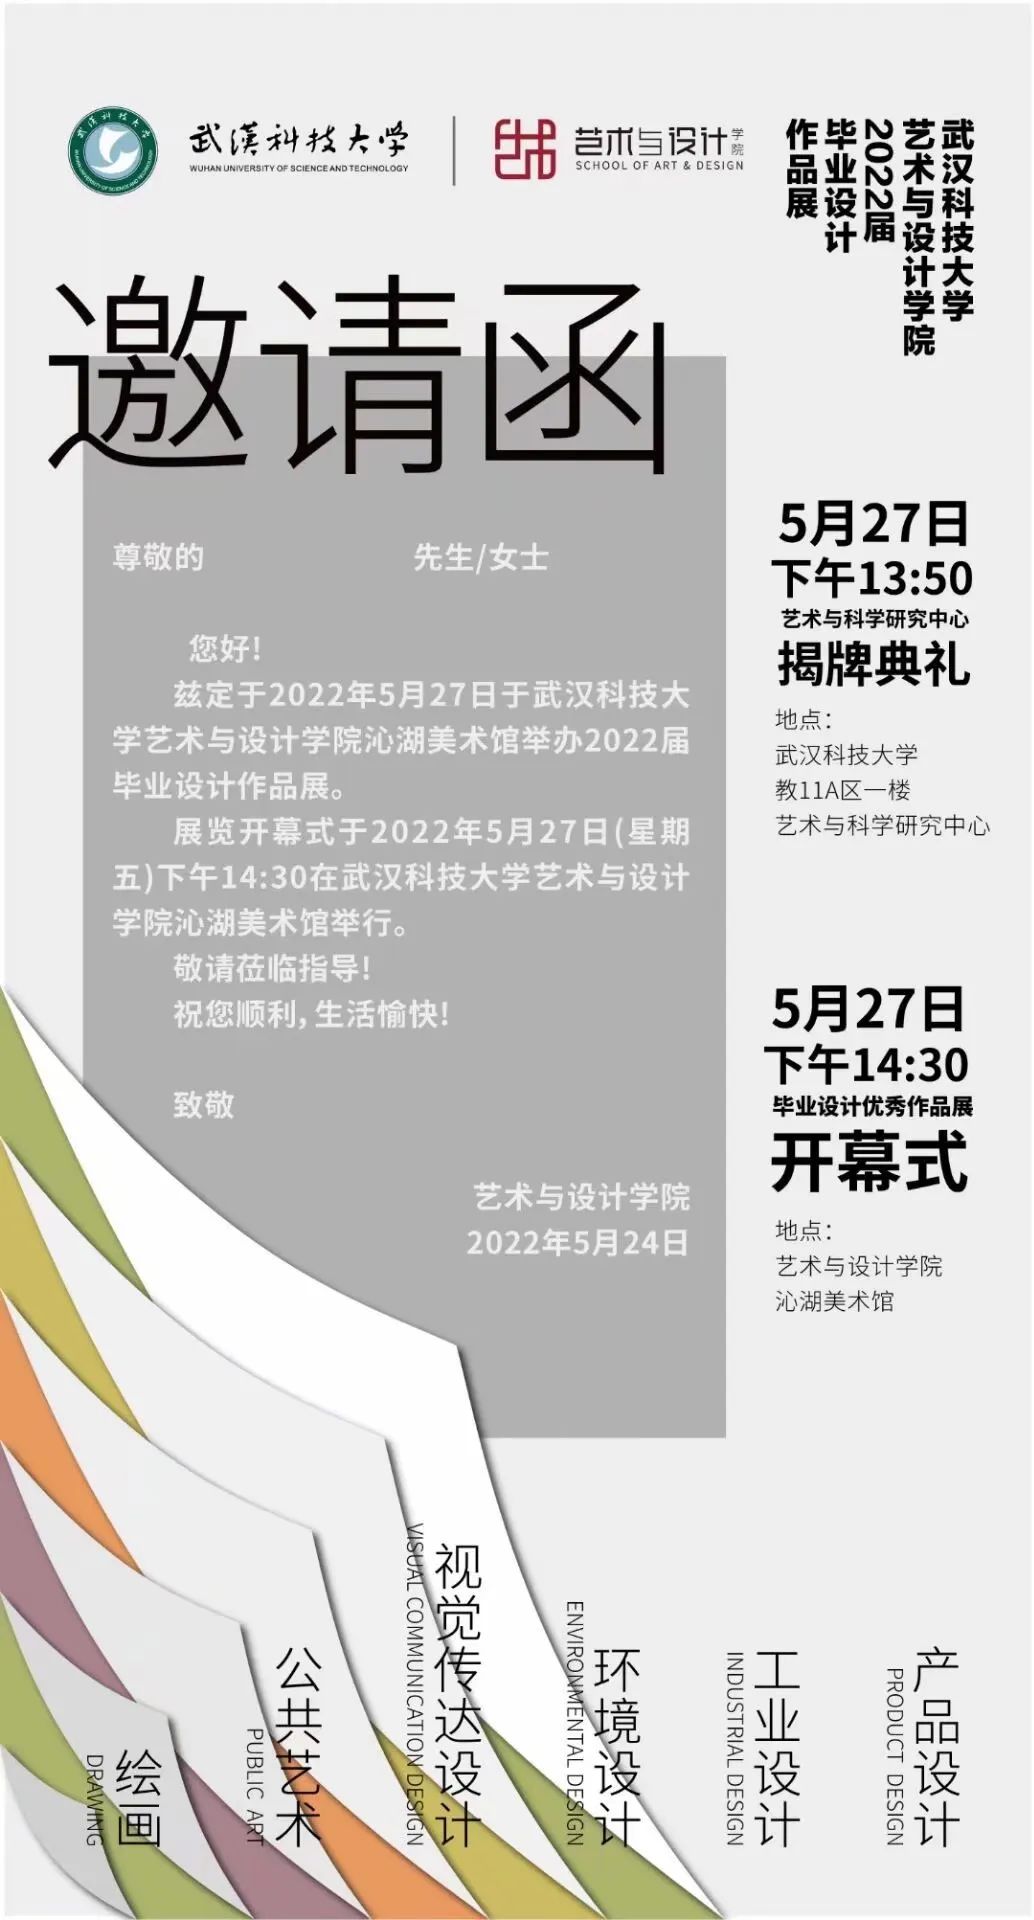 武汉科技大学艺术与设计学院2018级绘画毕业创作展(图1)